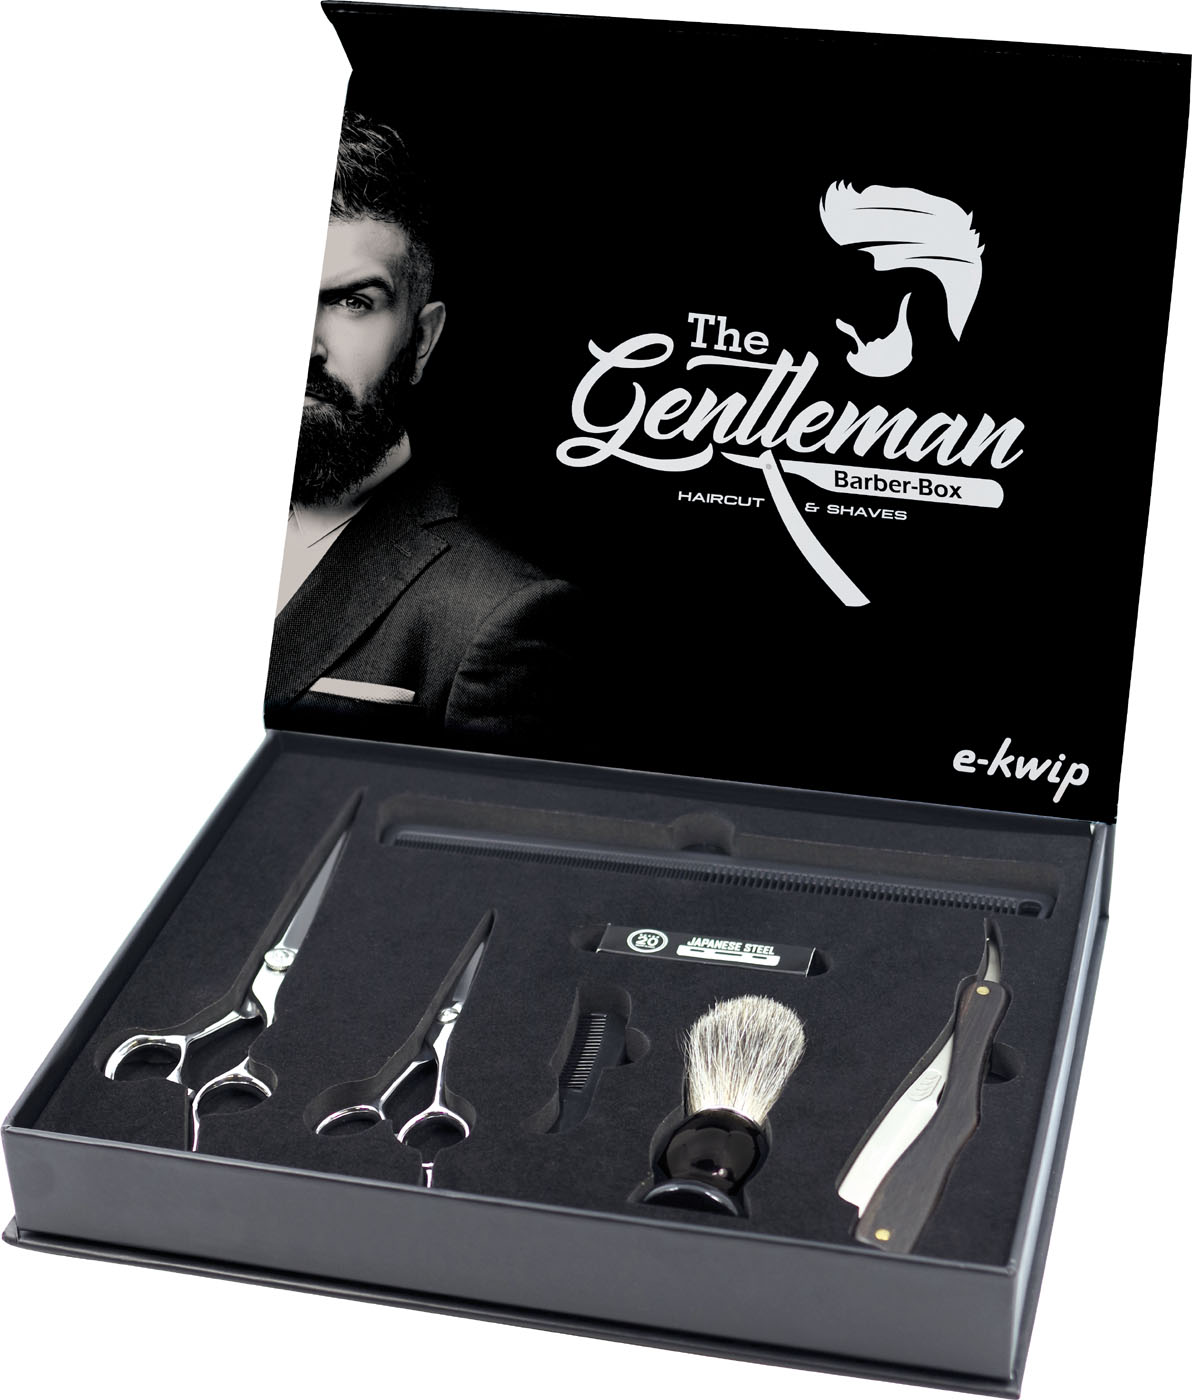  e-kwip The Gentleman Barber-Box 